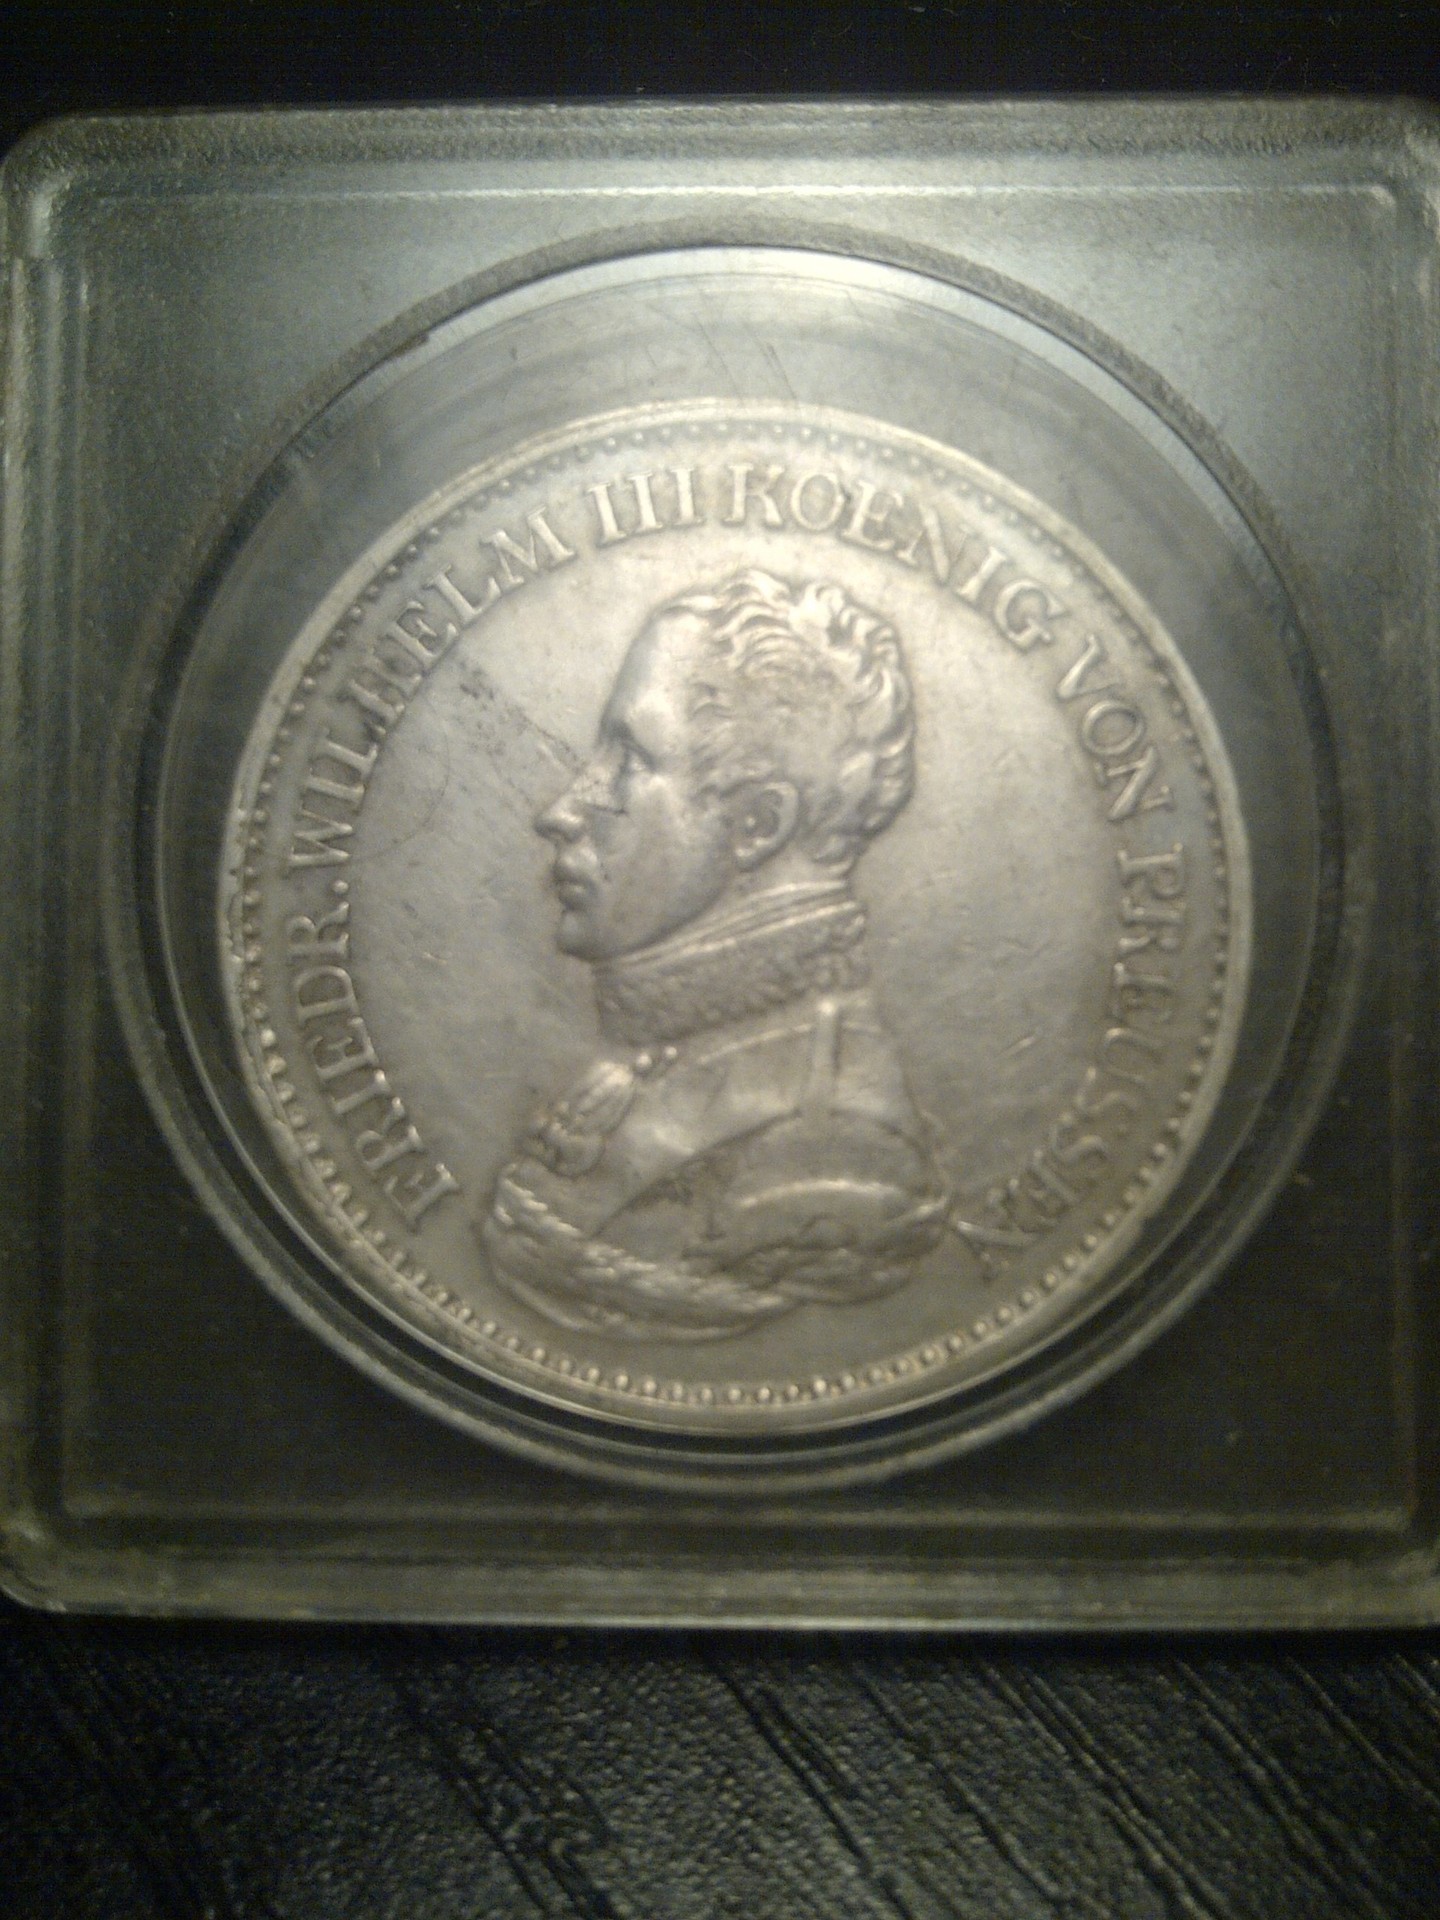 1819 (Wilhelm III) Ein Thaler value? | Coin Talk